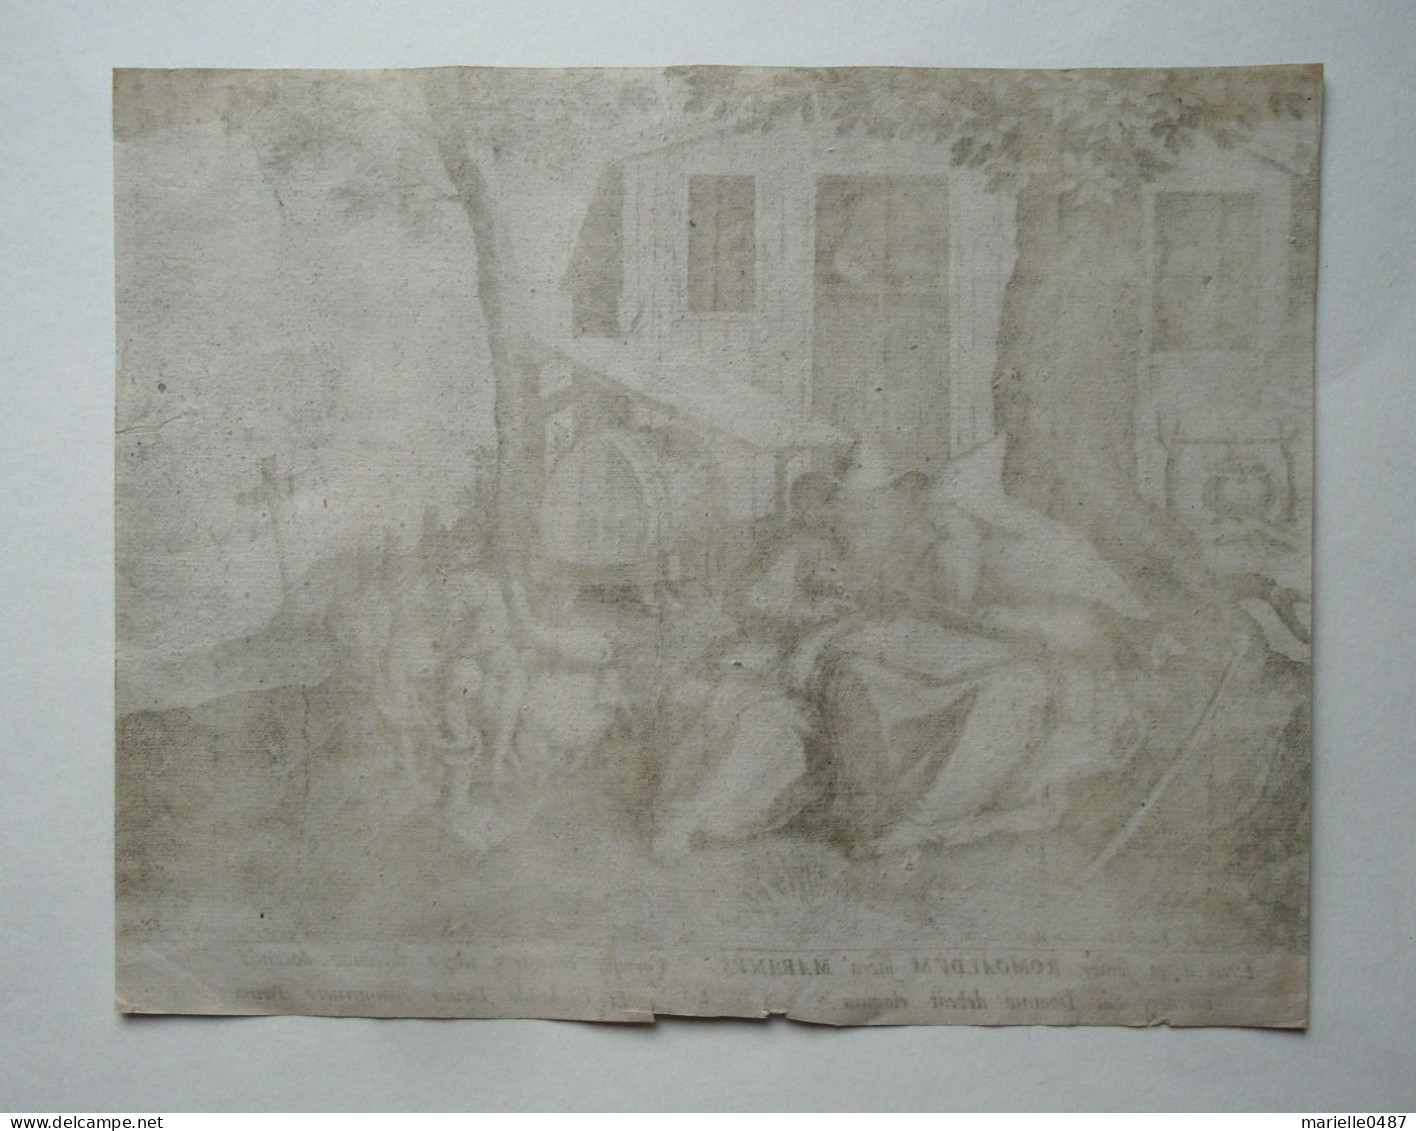 Martin De VOs - Sadeler - 1598 - Trophaeum Vitae Solitariae - Stiche & Gravuren